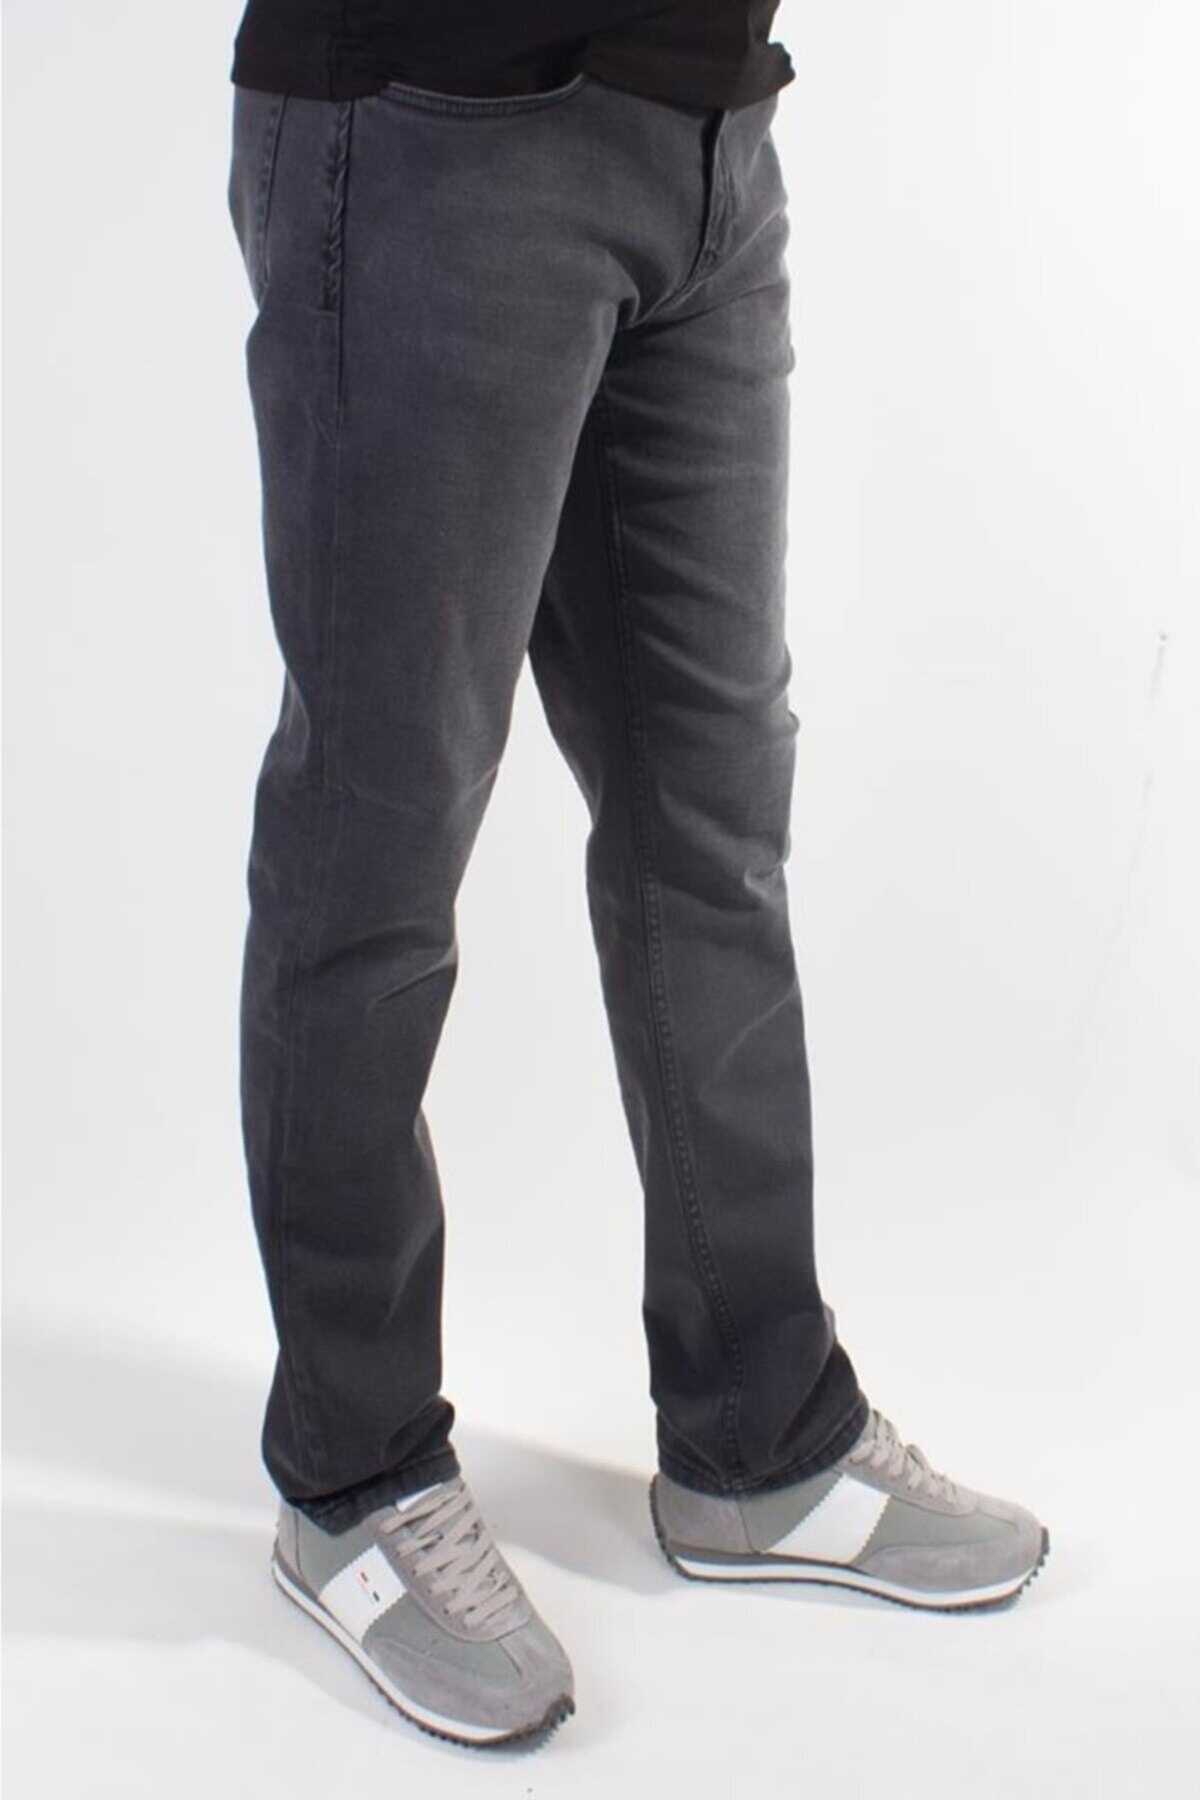 شلوار جین سایز بزرگ جیب دار مردانه خاکستری برند Big Jeans